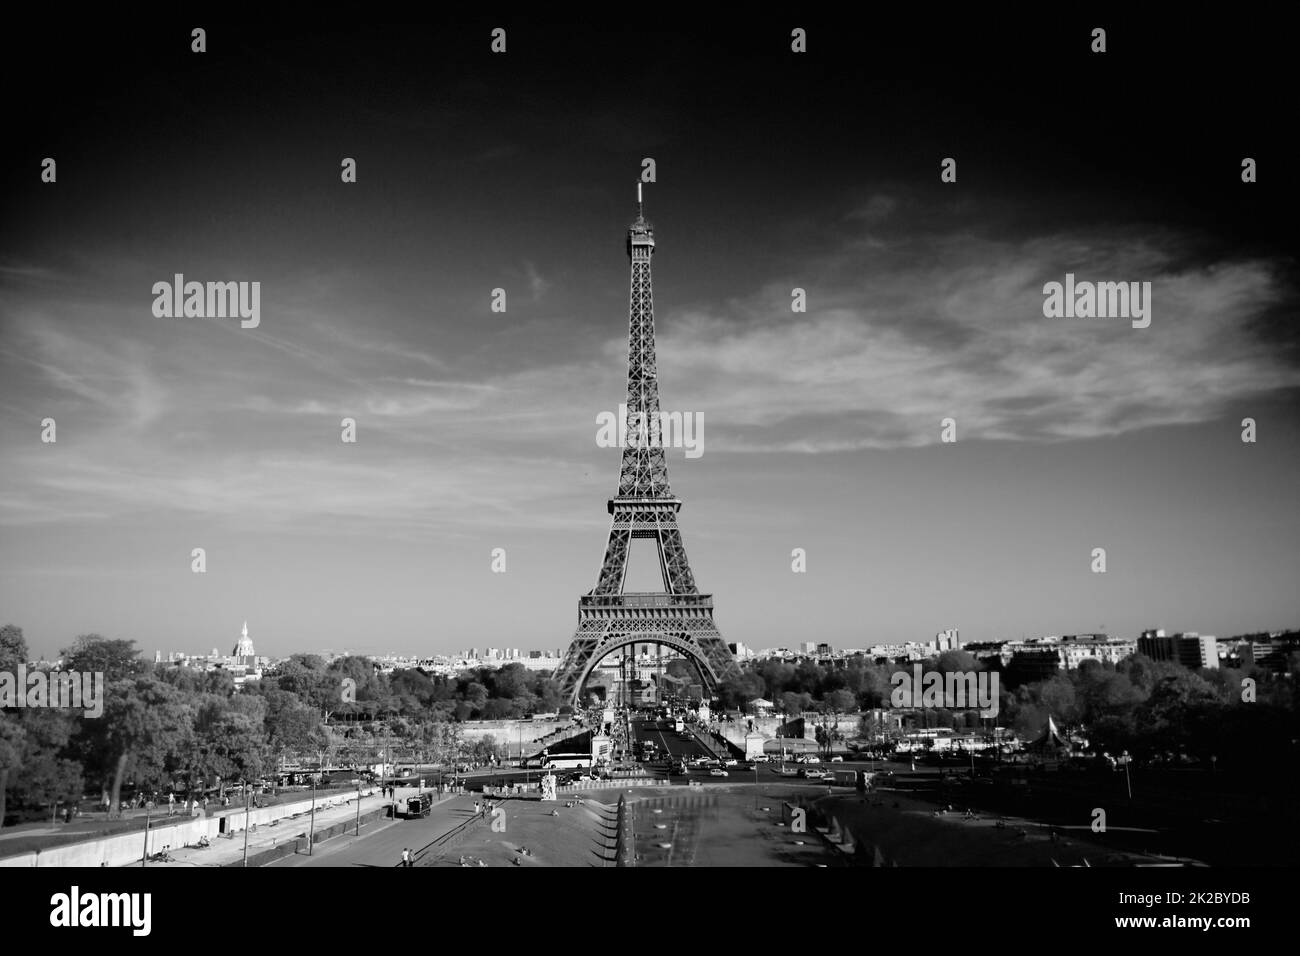 Paris est toujours une bonne idée. Une image en noir et blanc de la Tour Eiffel. Banque D'Images